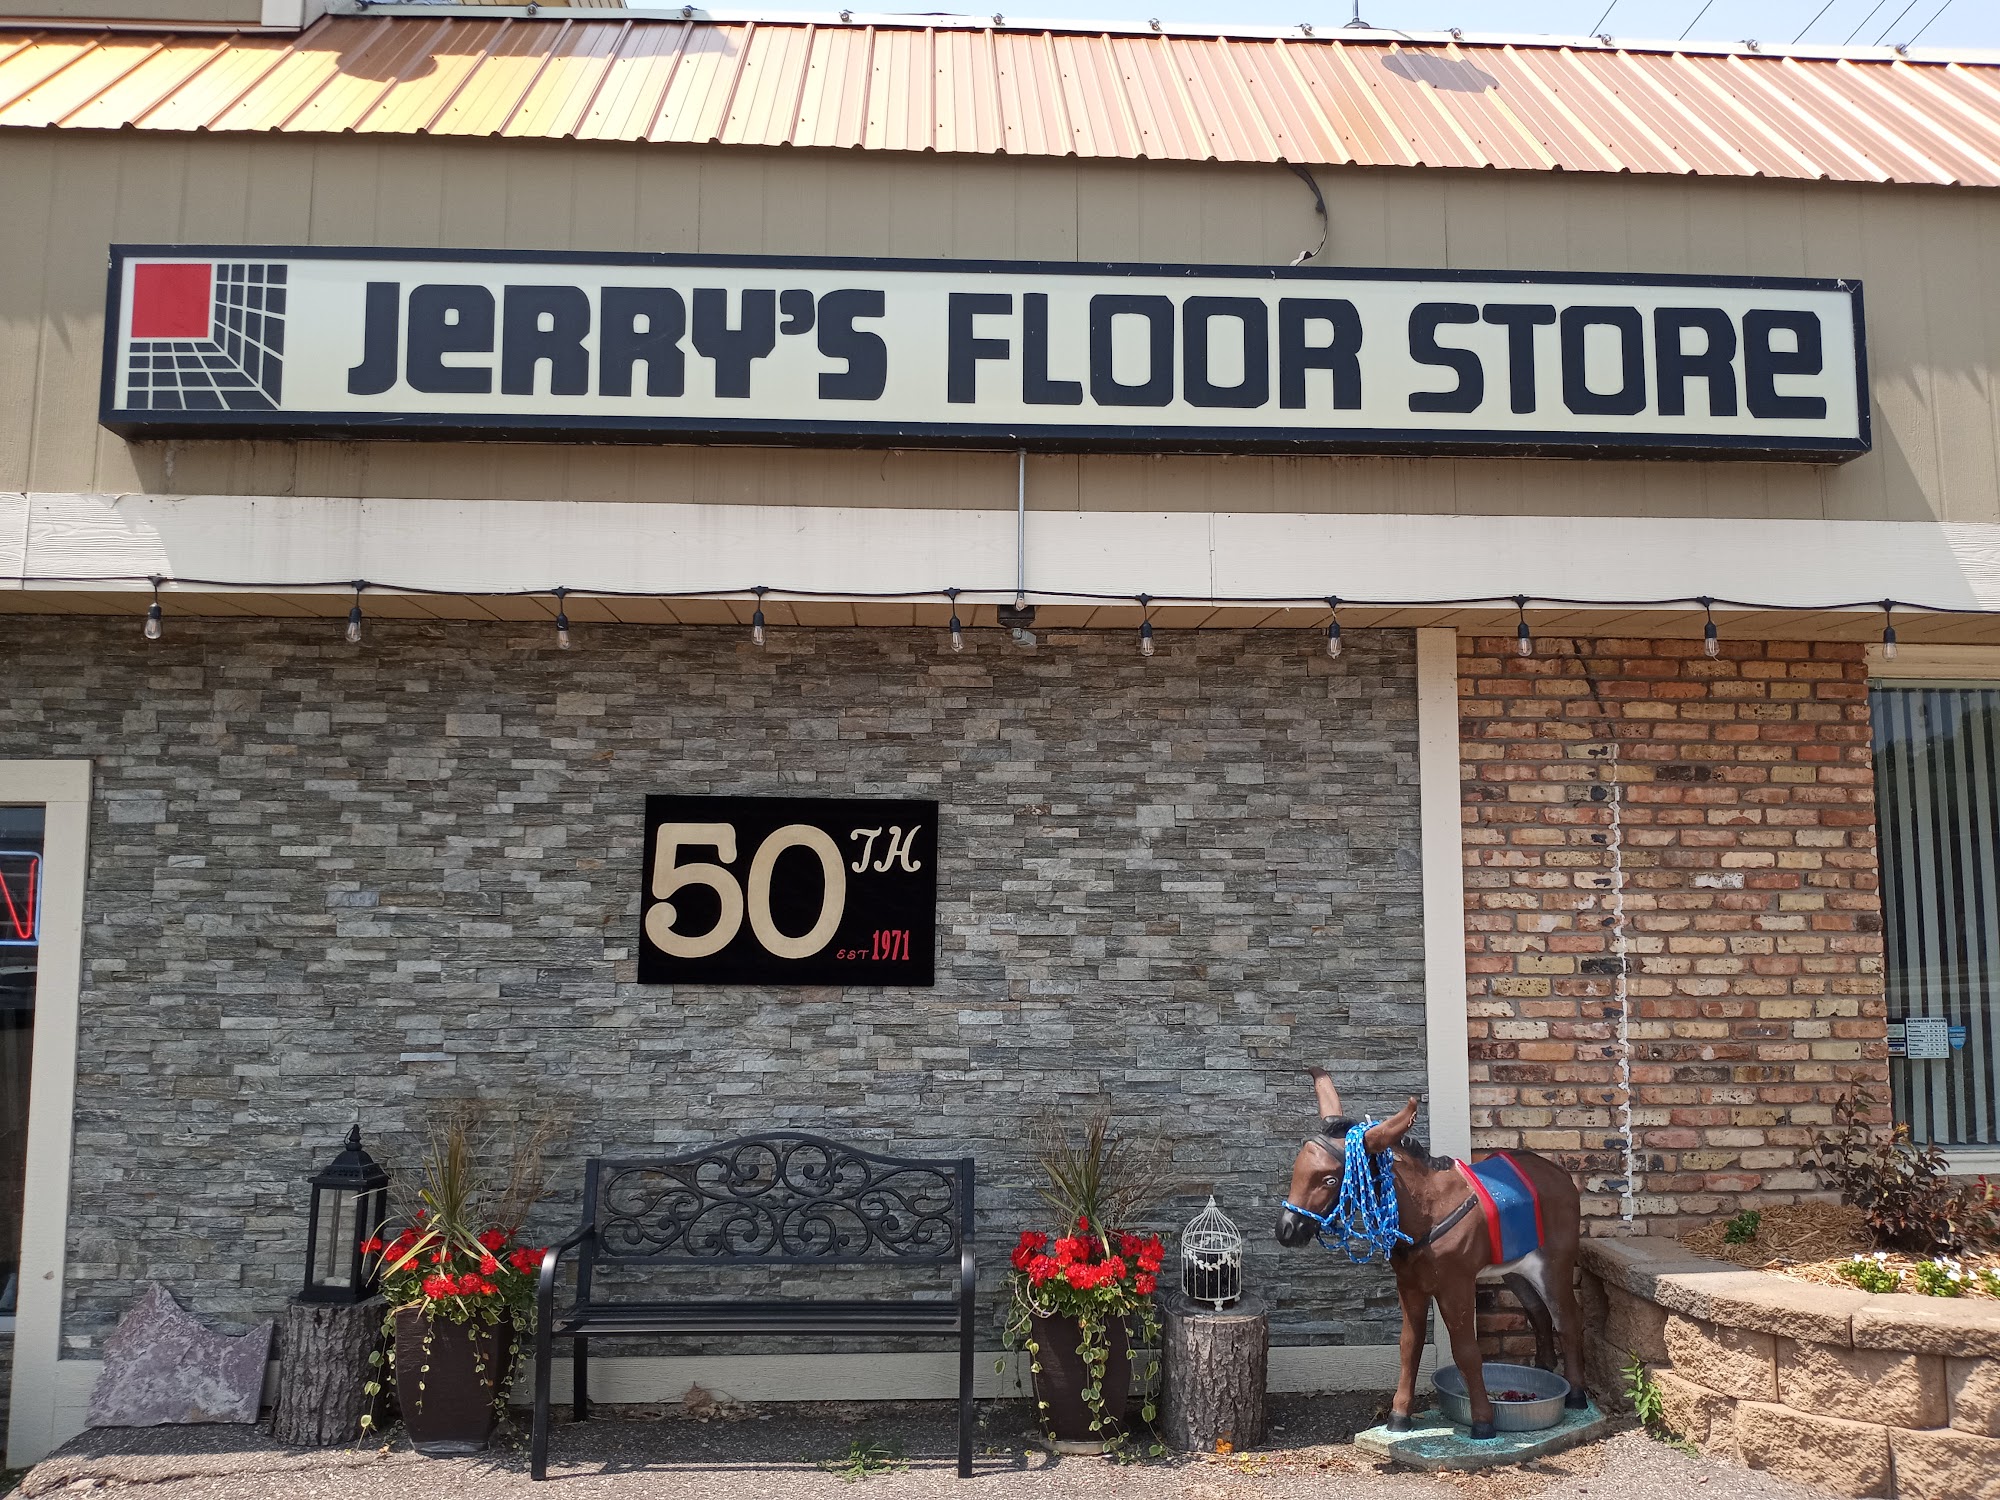 Jerry's Floor Store